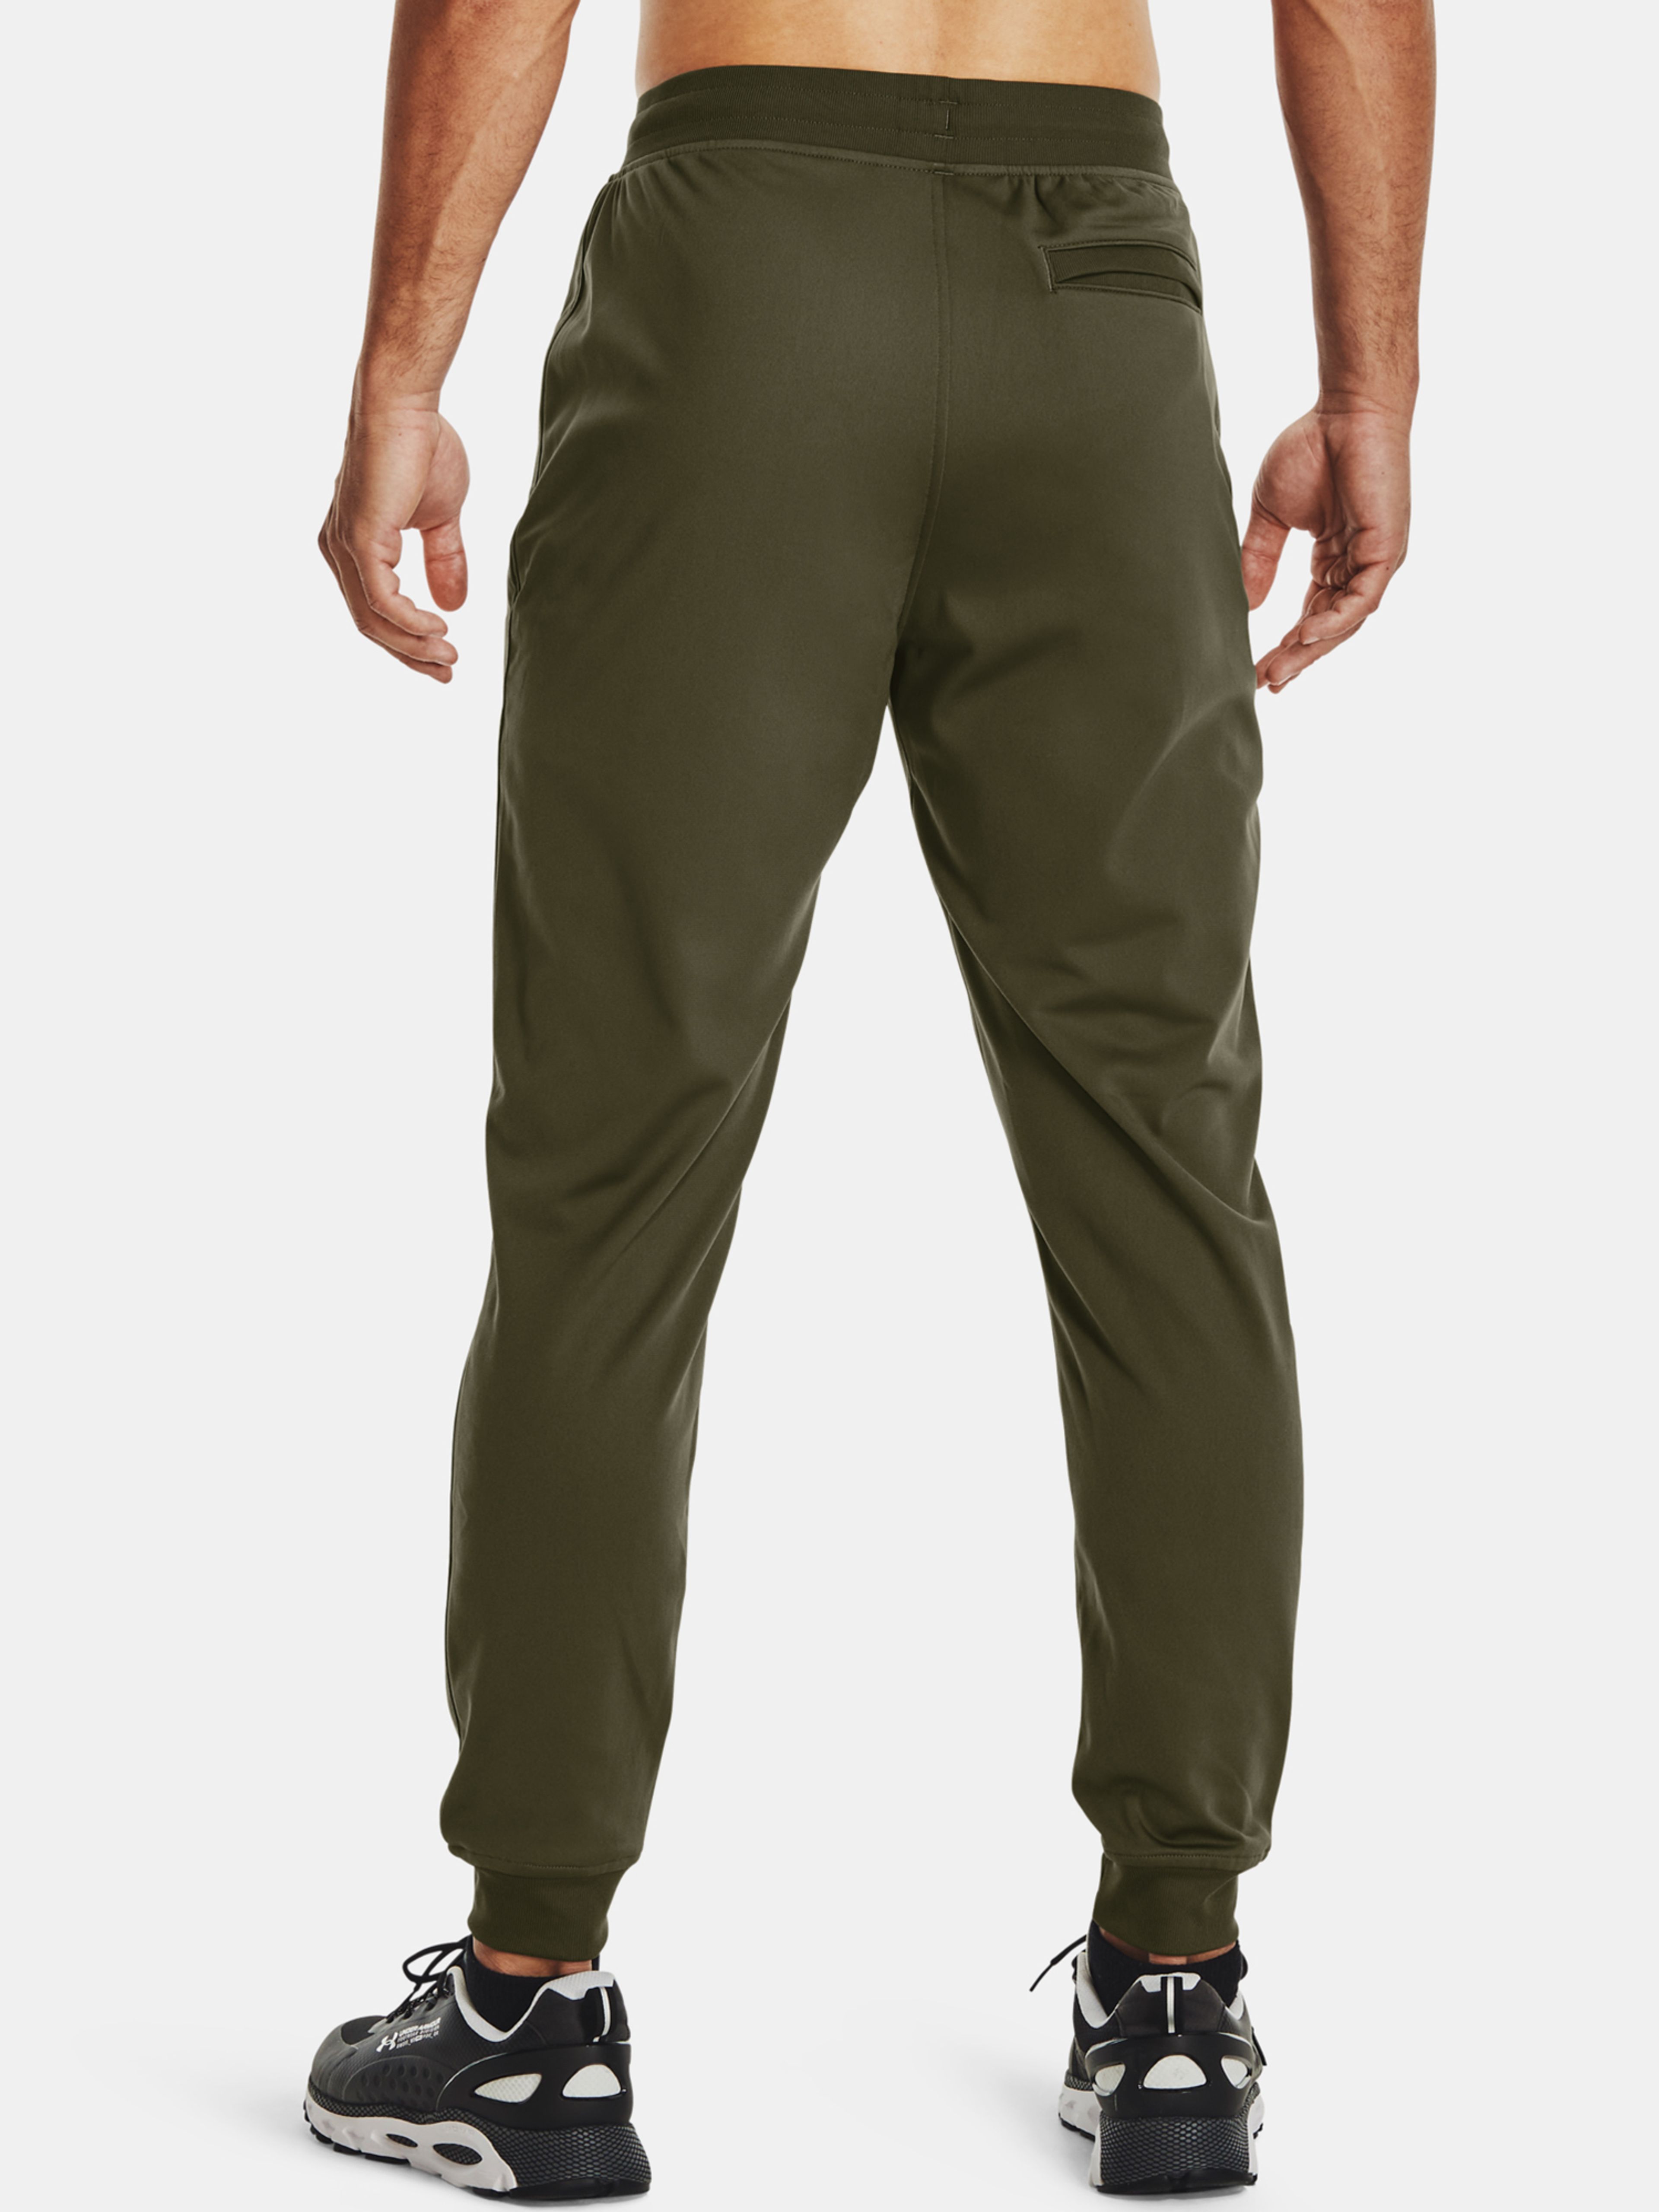  SPORTSTYLE TRICOT JOGGER, Gray - men's trousers - UNDER  ARMOUR - 44.12 € - outdoorové oblečení a vybavení shop